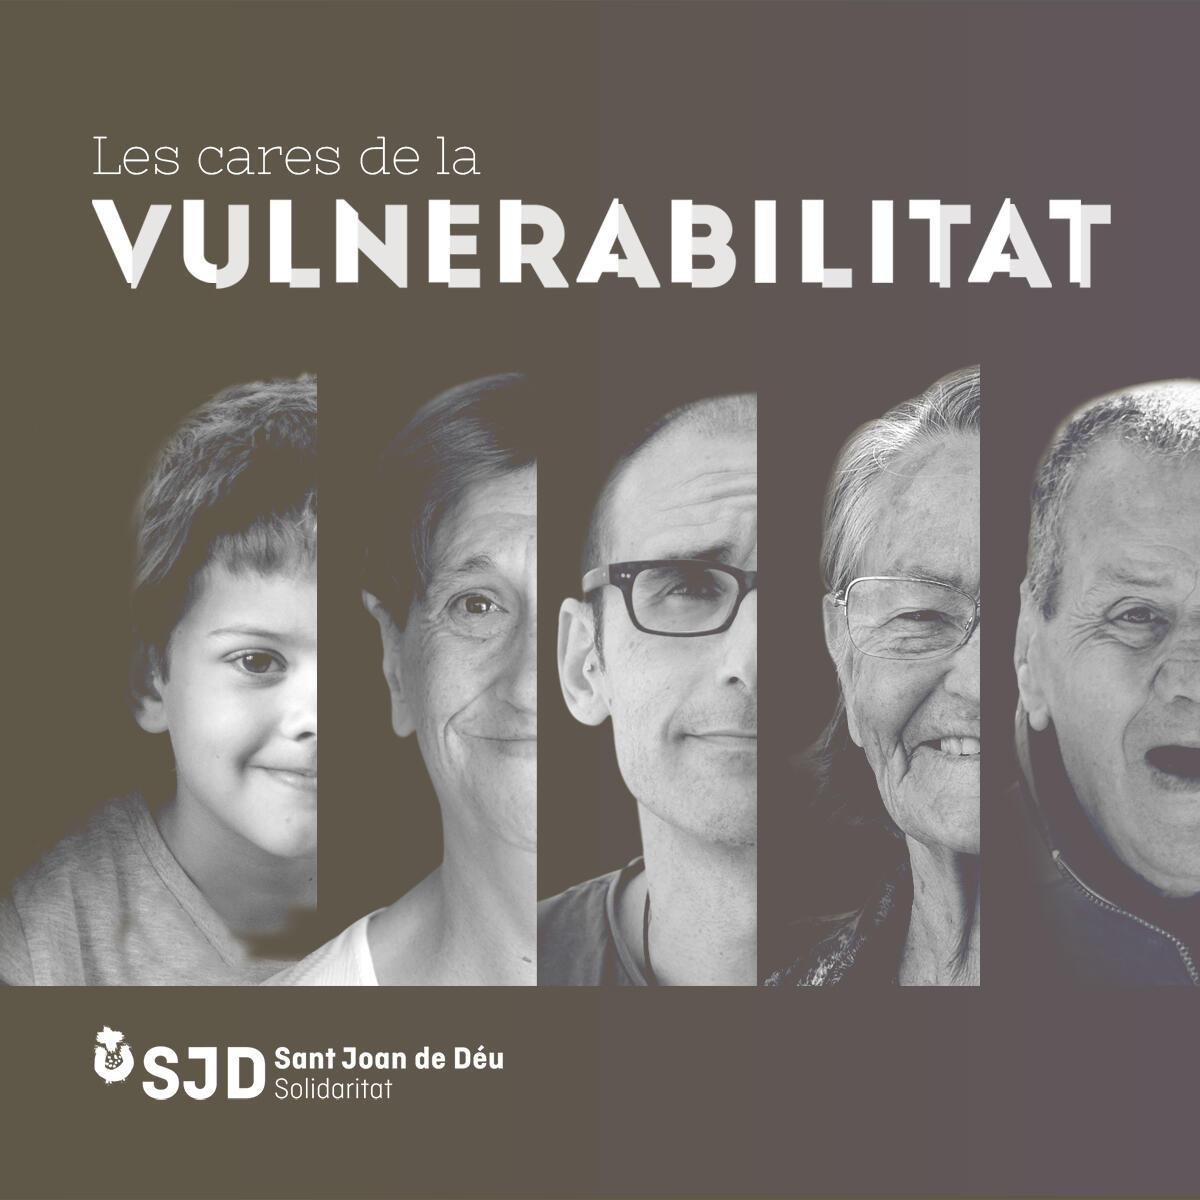 Fotografia de la campanya "Les Cares de la Vulnerabilitat" amb fotografies en blanc i negre de mitja cara de diferents persones i un infant.